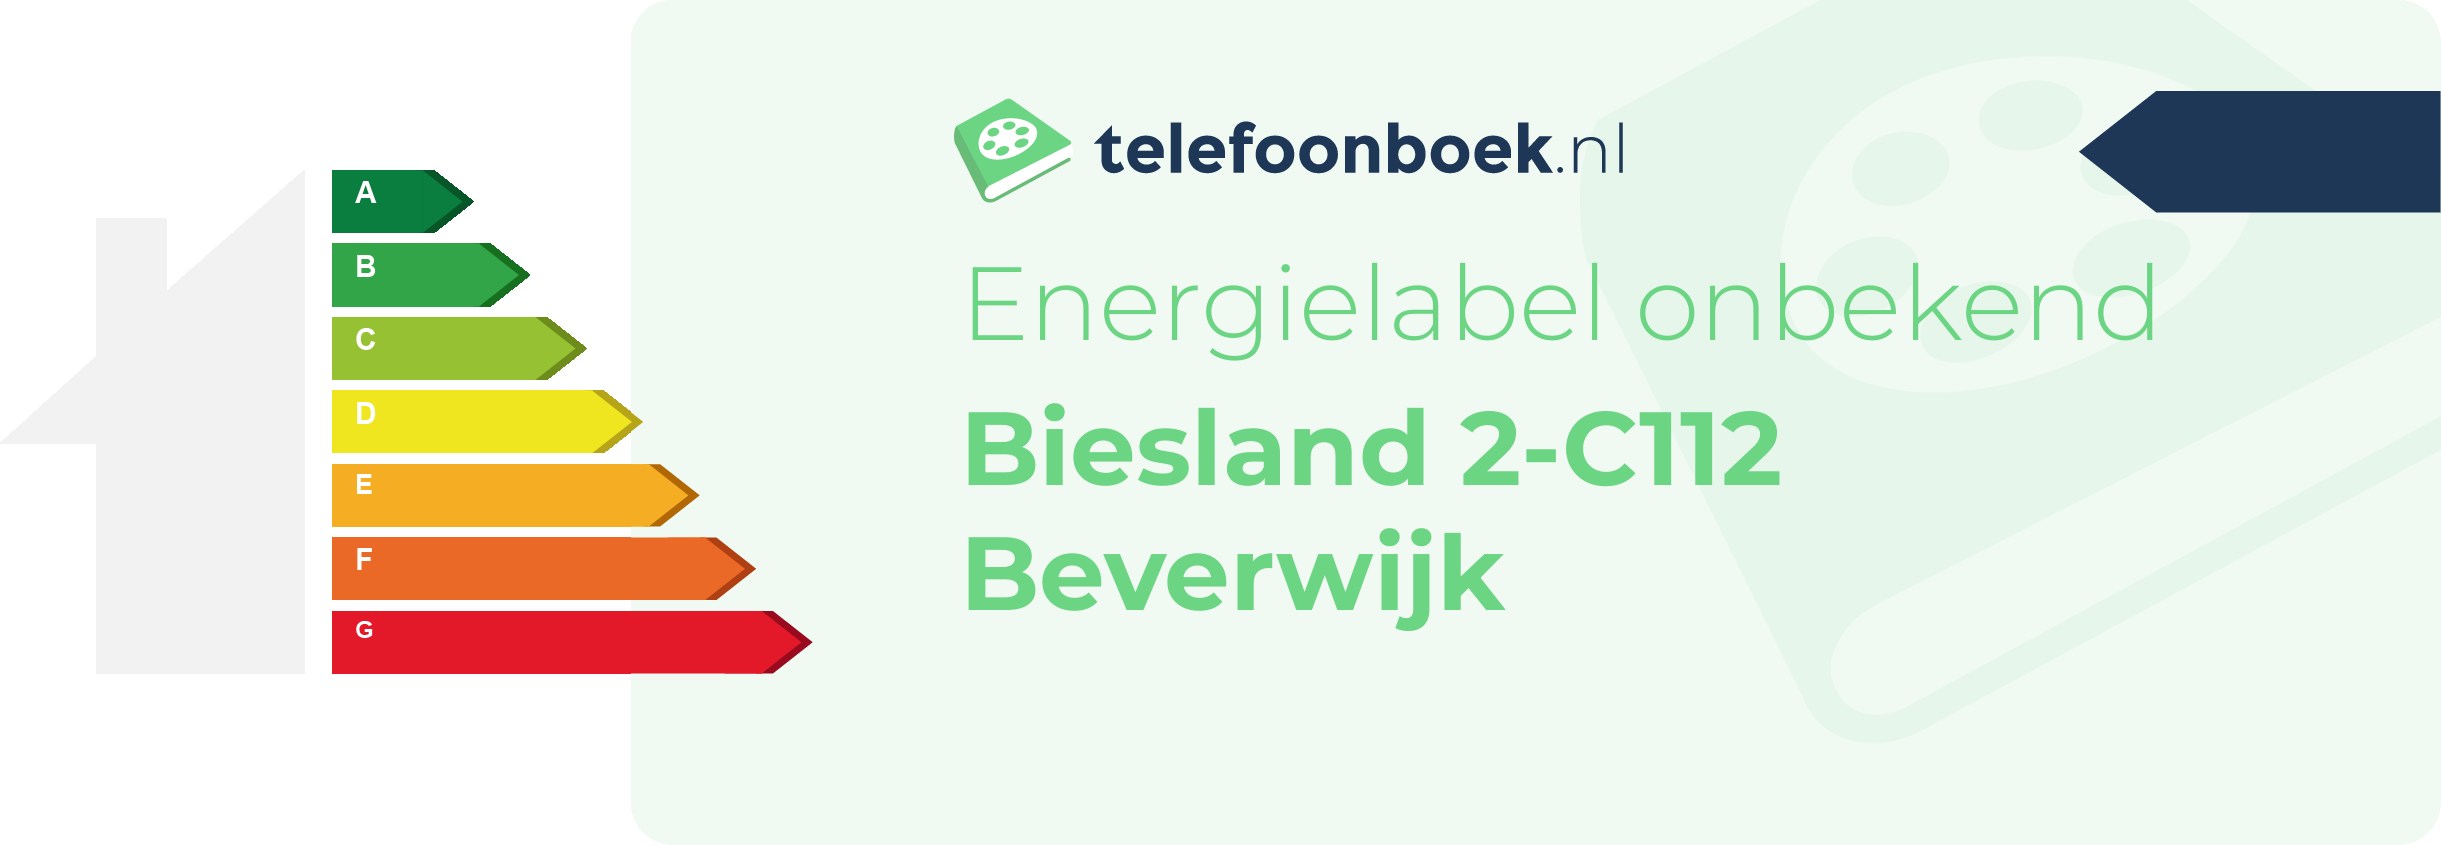 Energielabel Biesland 2-C112 Beverwijk